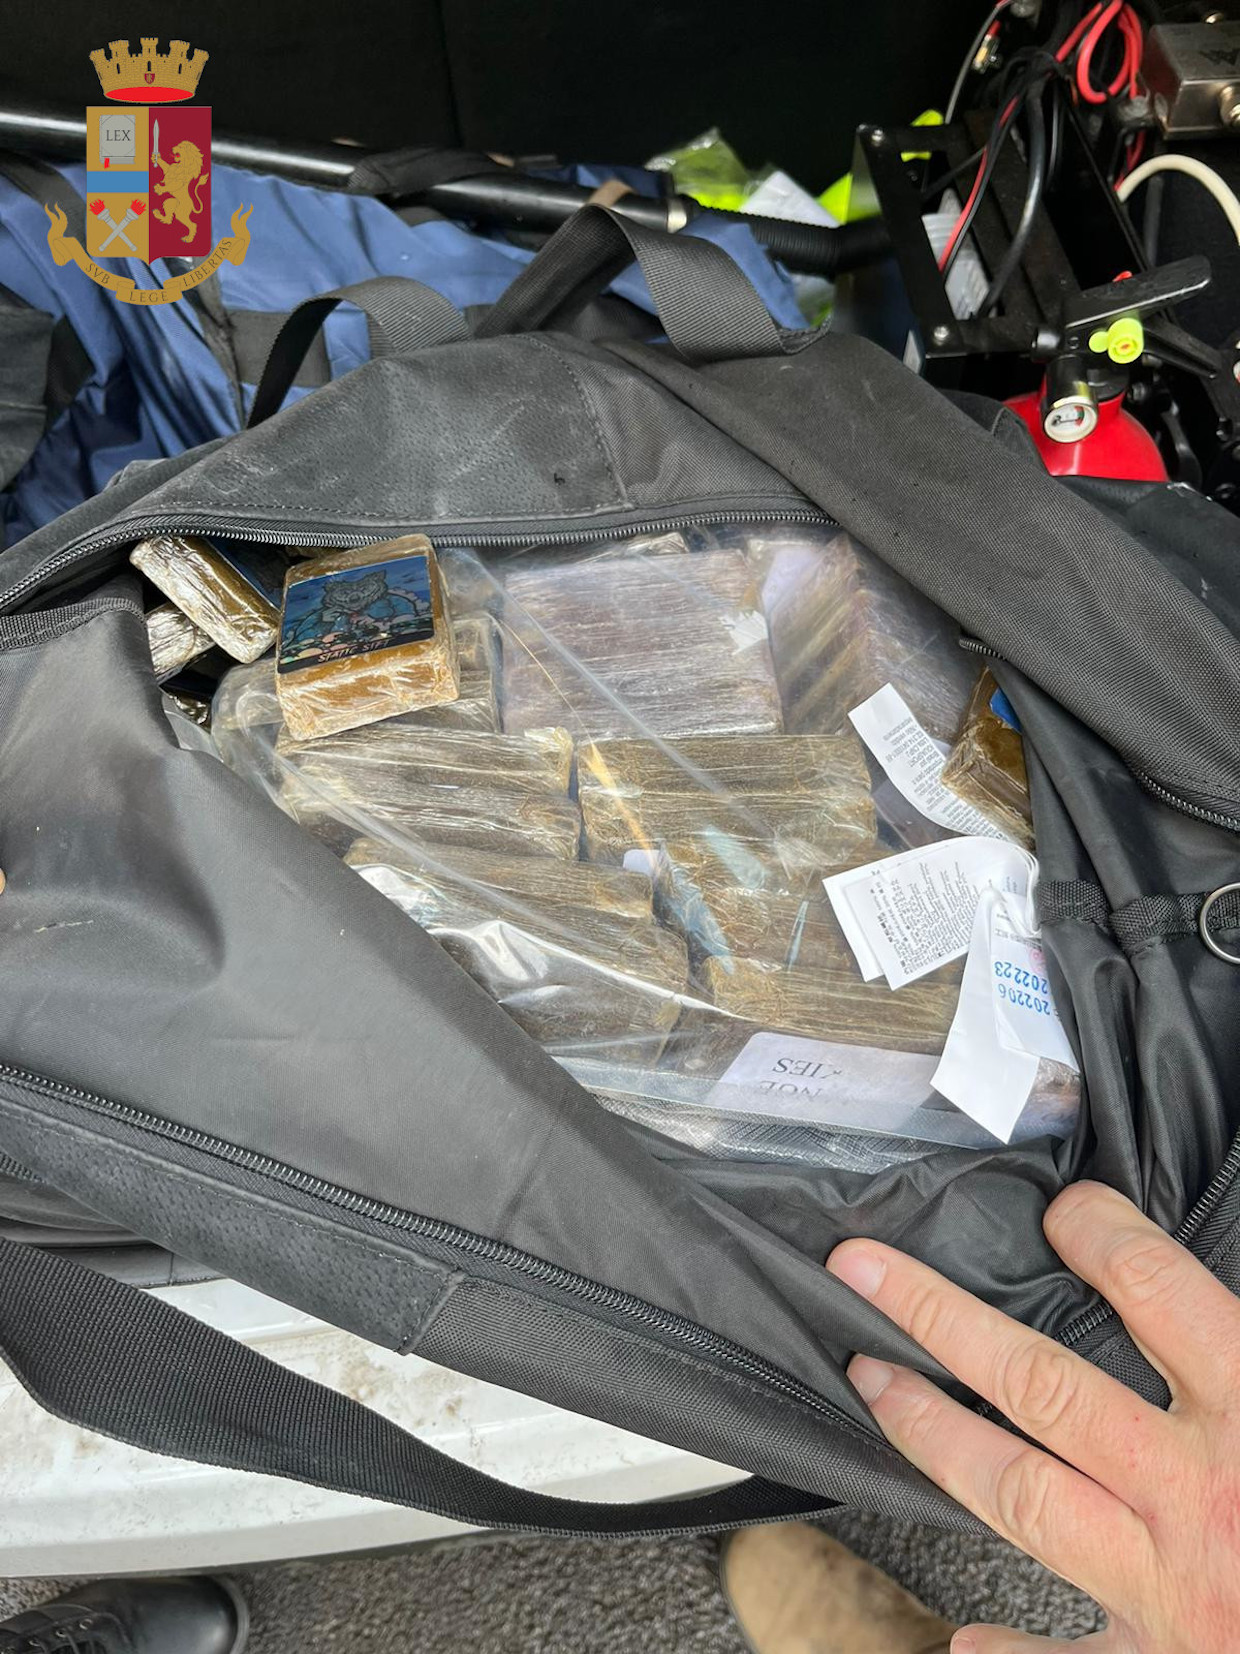 Nascondeva 26 kg di hashish in via Veneto a Nettuno, arrestato un 27enne